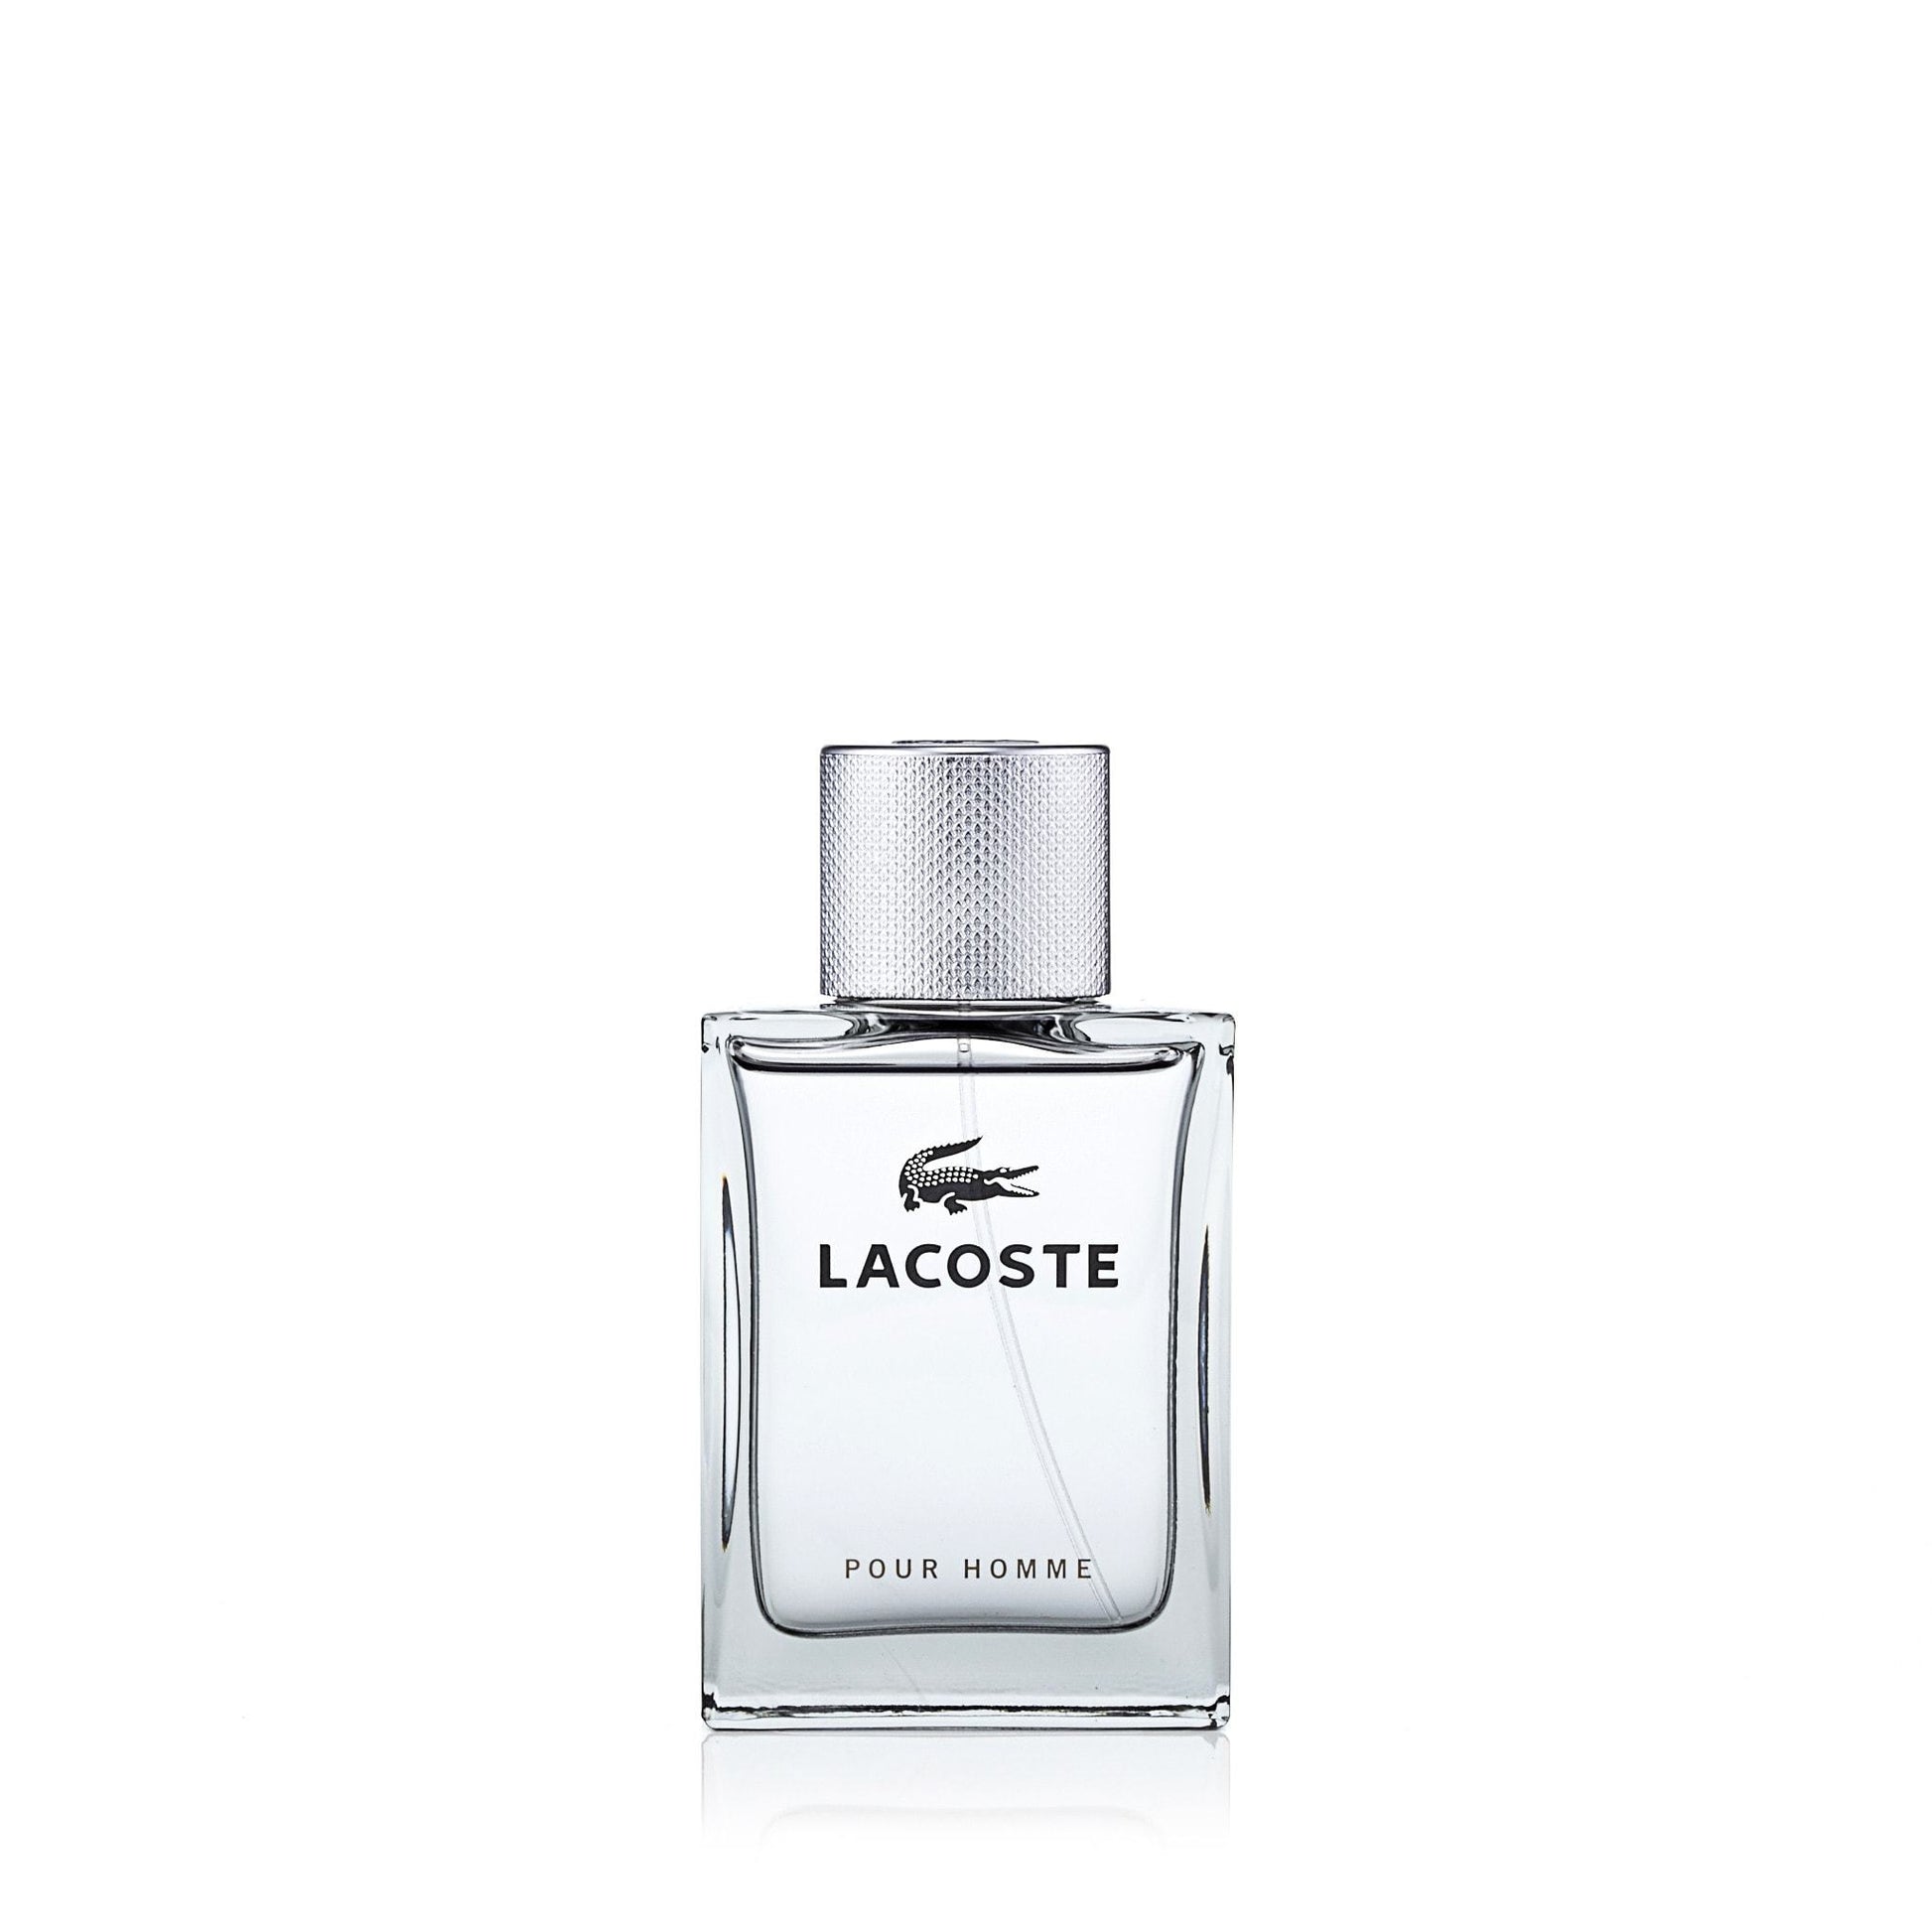 Lacoste Pour Homme Eau de Toilette Spray for Men by Lacoste, Product image 2